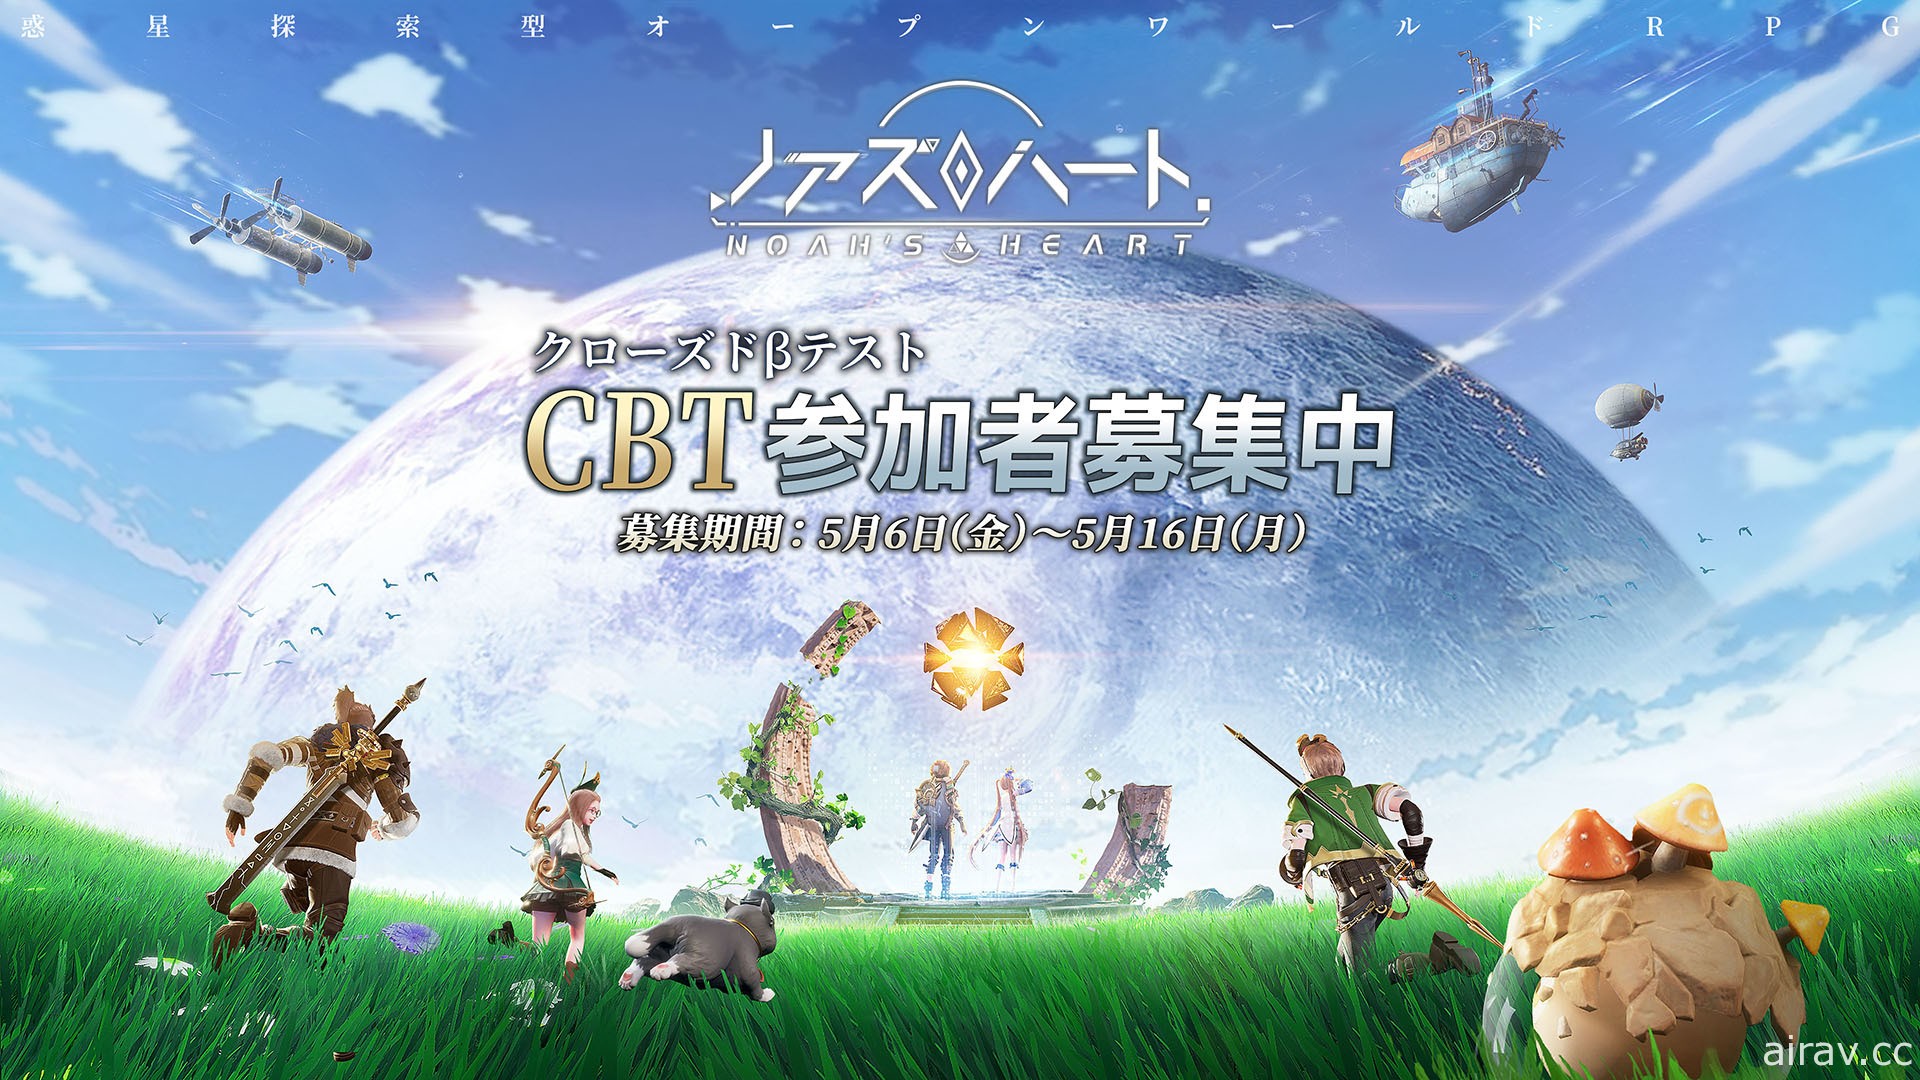 星球探索型开放世界 RPG《诺亚之心》于日本展开 CBT 招募